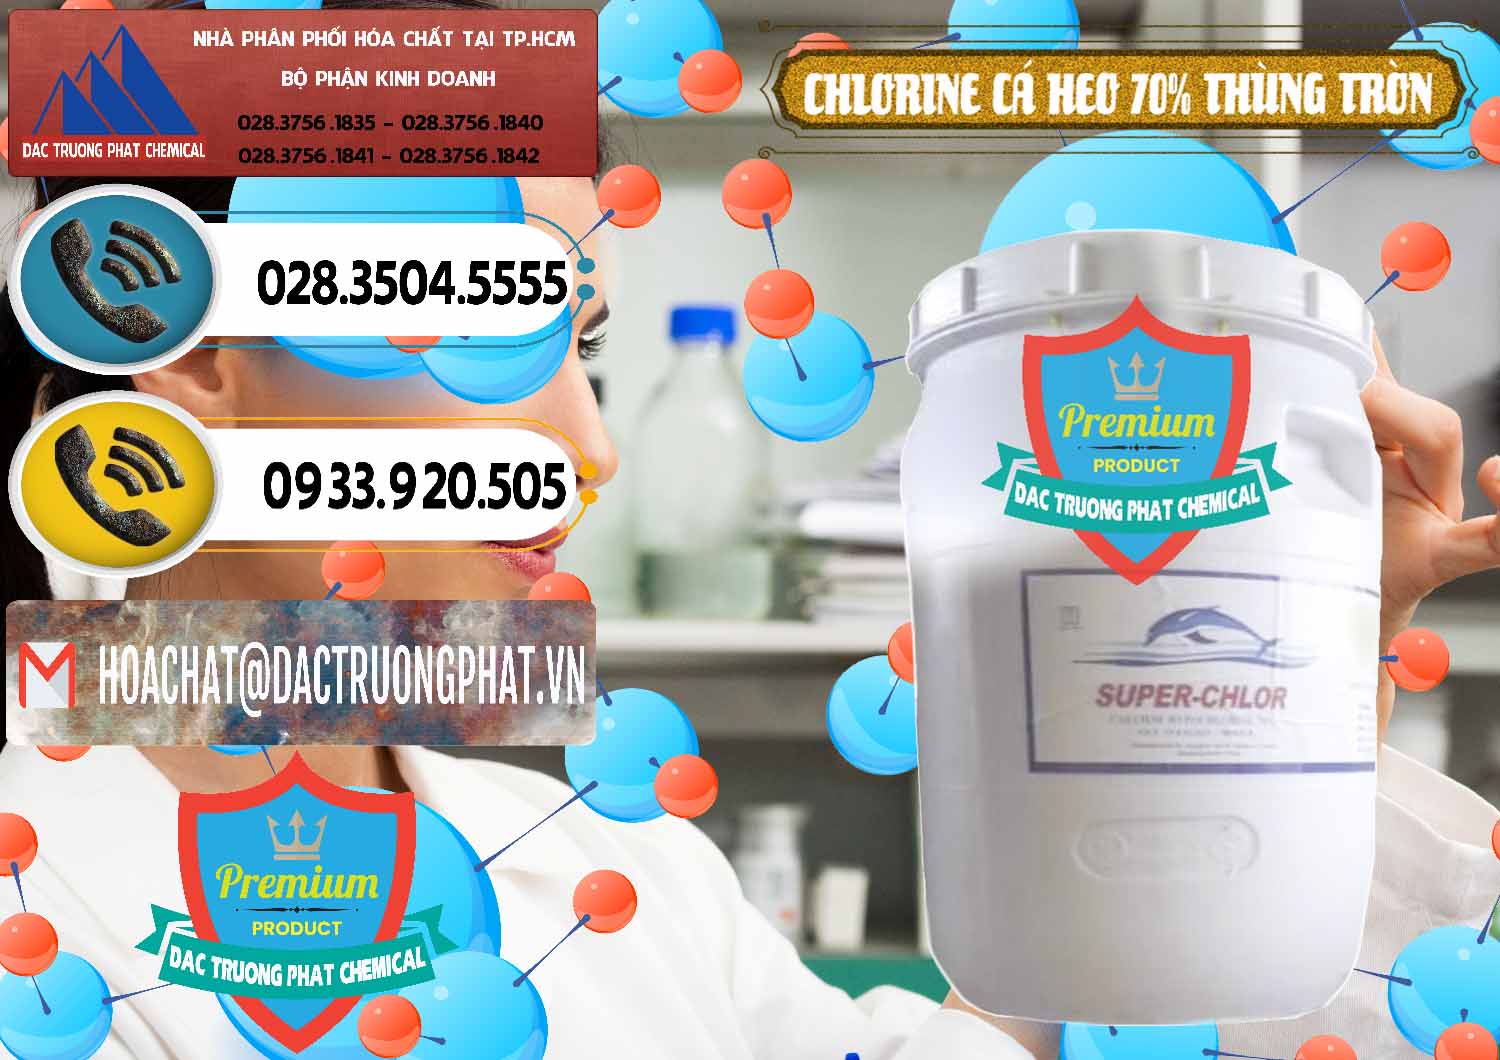 Nhà nhập khẩu & bán Clorin - Chlorine Cá Heo 70% Super Chlor Thùng Tròn Nắp Trắng Trung Quốc China - 0239 - Cty phân phối & nhập khẩu hóa chất tại TP.HCM - hoachatdetnhuom.vn